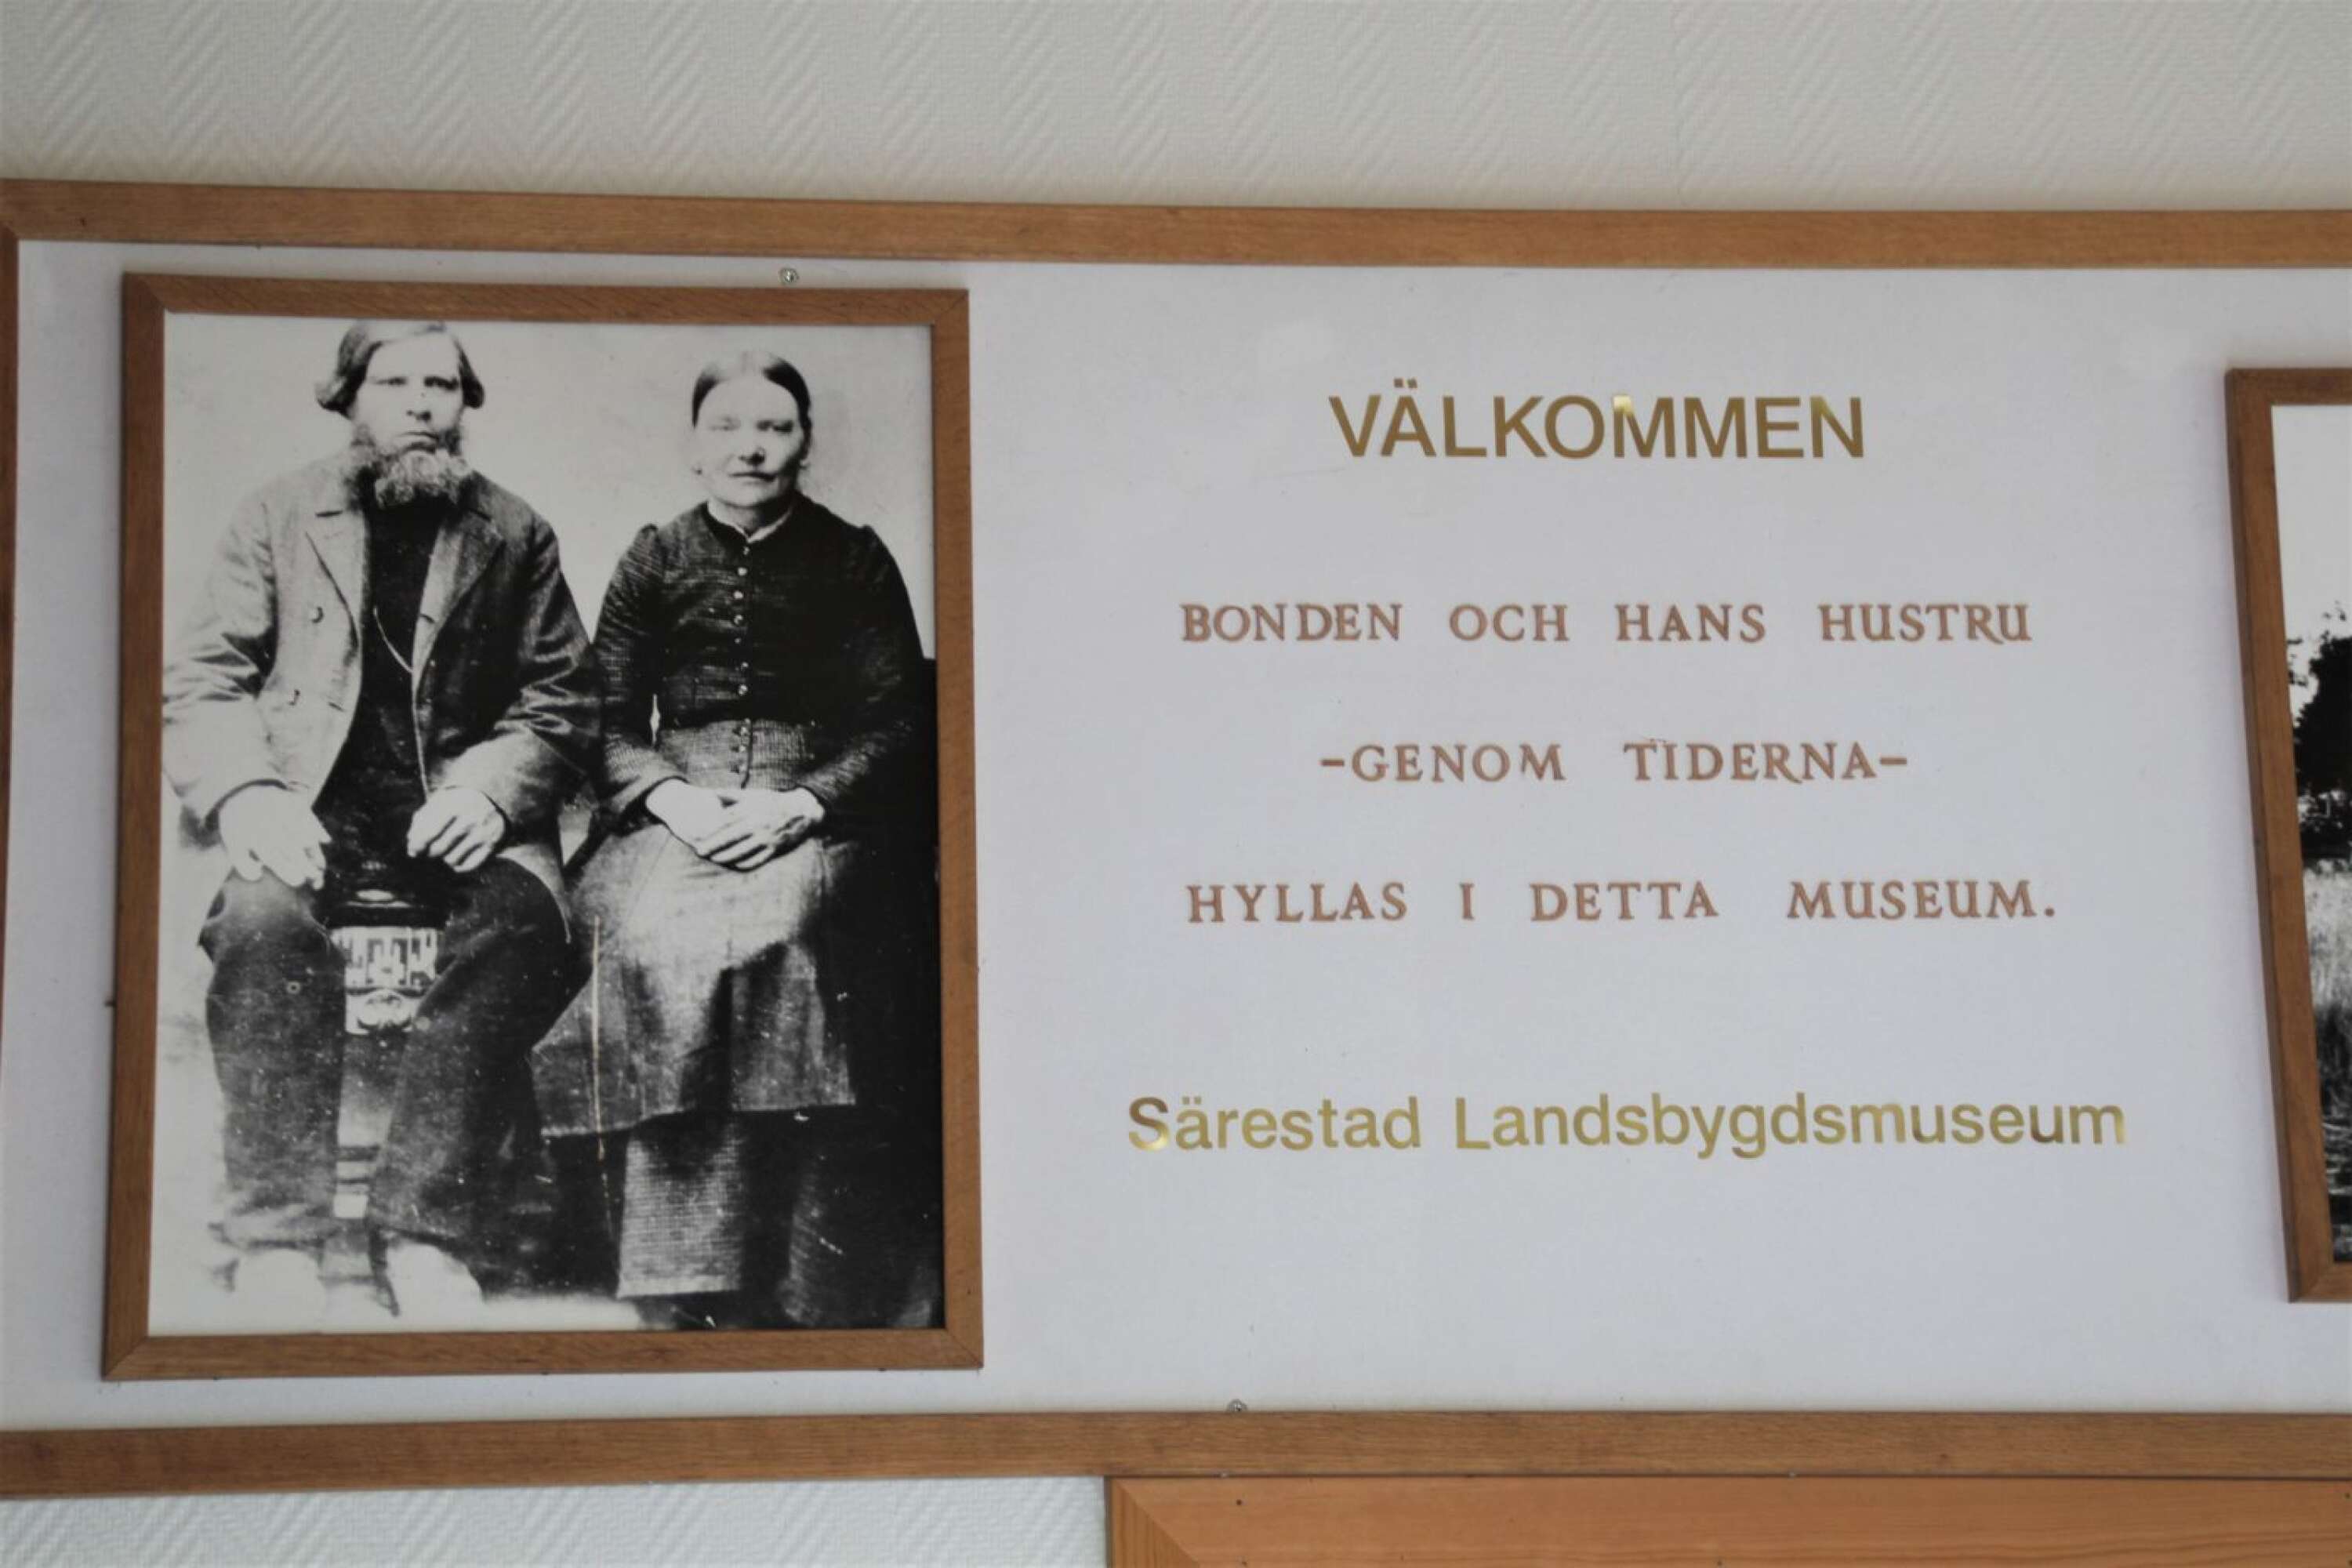 Bonden och hans hustru hyllas i Särestad landsbygdsmuseum.